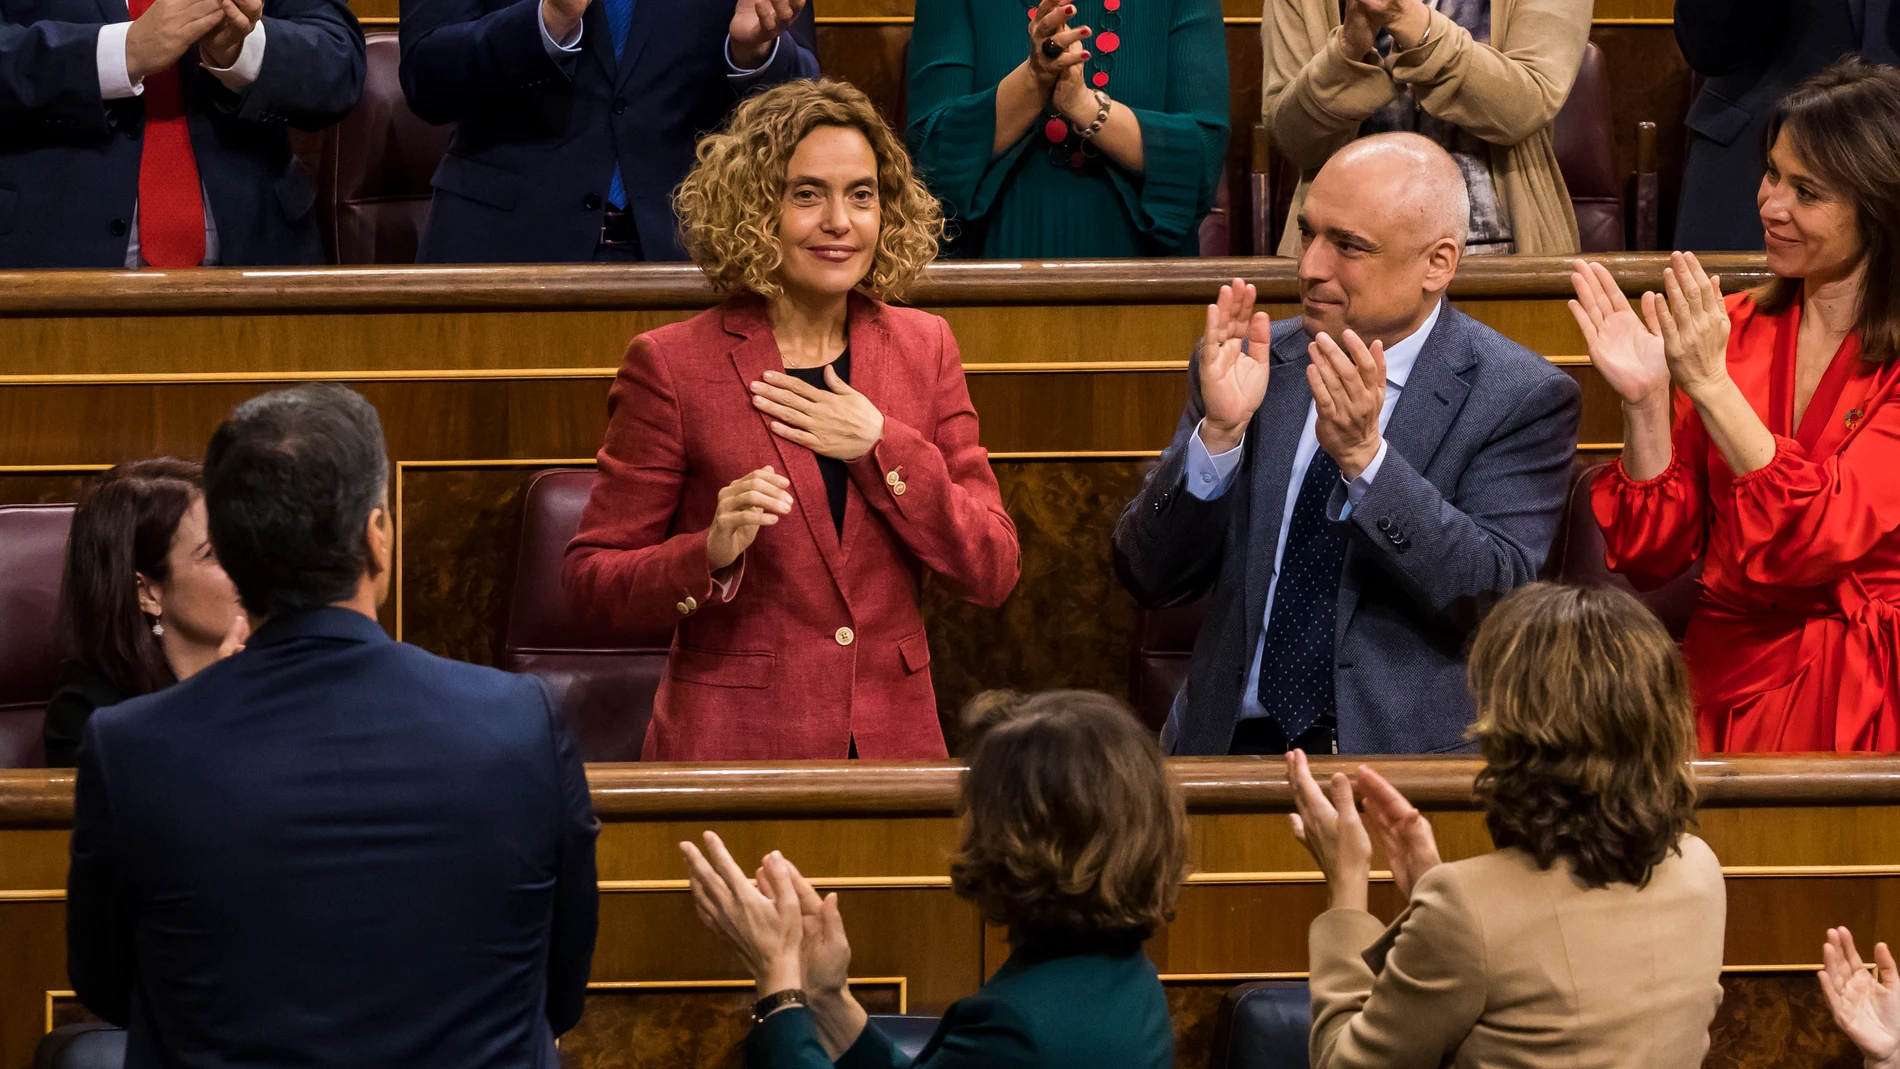 La presidenta del Congreso de los Diputados, Meritxell Batet recibe el aplauso del hemiciclo tras ser reelegida presidente del Congreso. Foto: Alberto R. Roldán.